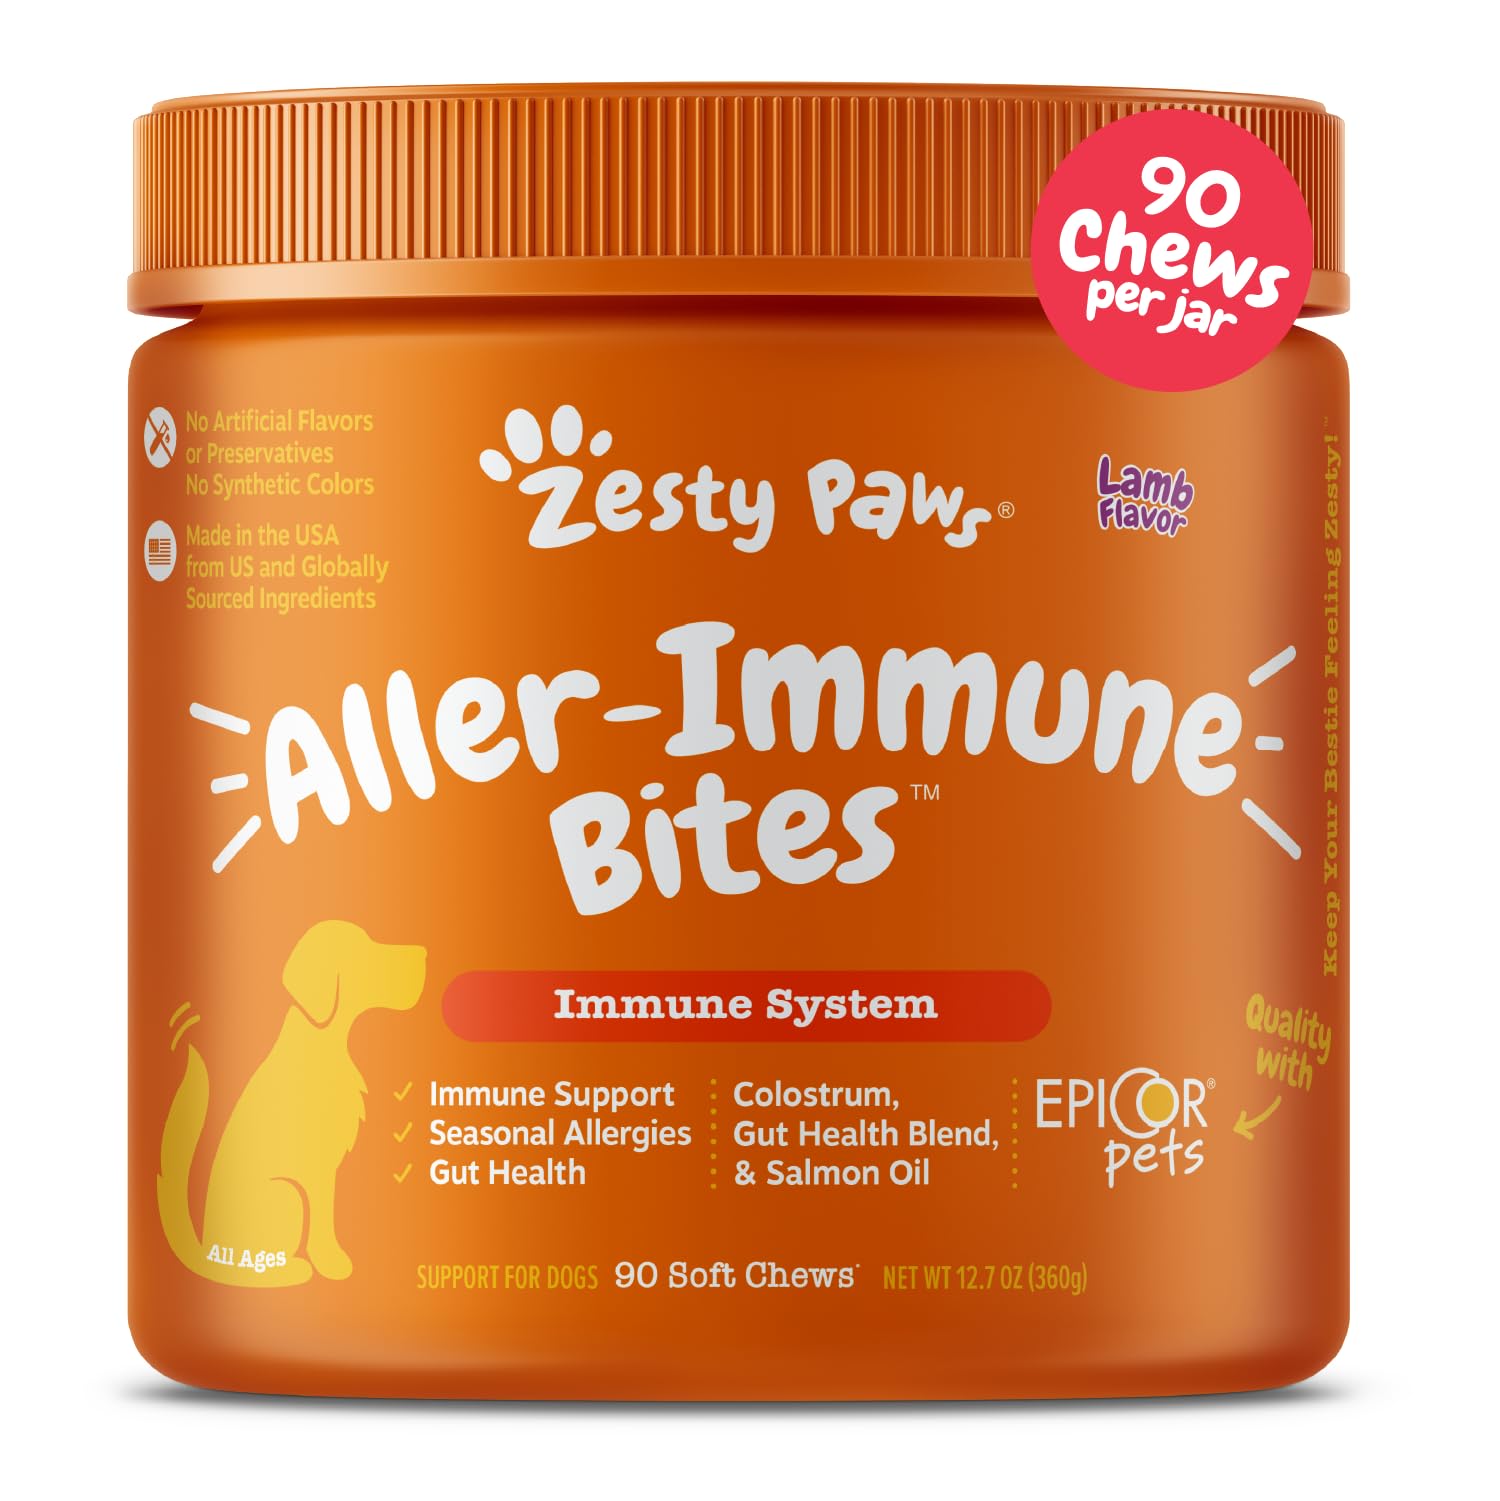 Zesty Paws 狗过敏缓解 - 止痒补充剂 - 狗用 Omega 3 益生菌 - 鲑鱼油消化健康 - 皮肤和季节性过敏软咀嚼片 - 与 Epicor Pets 一起使用